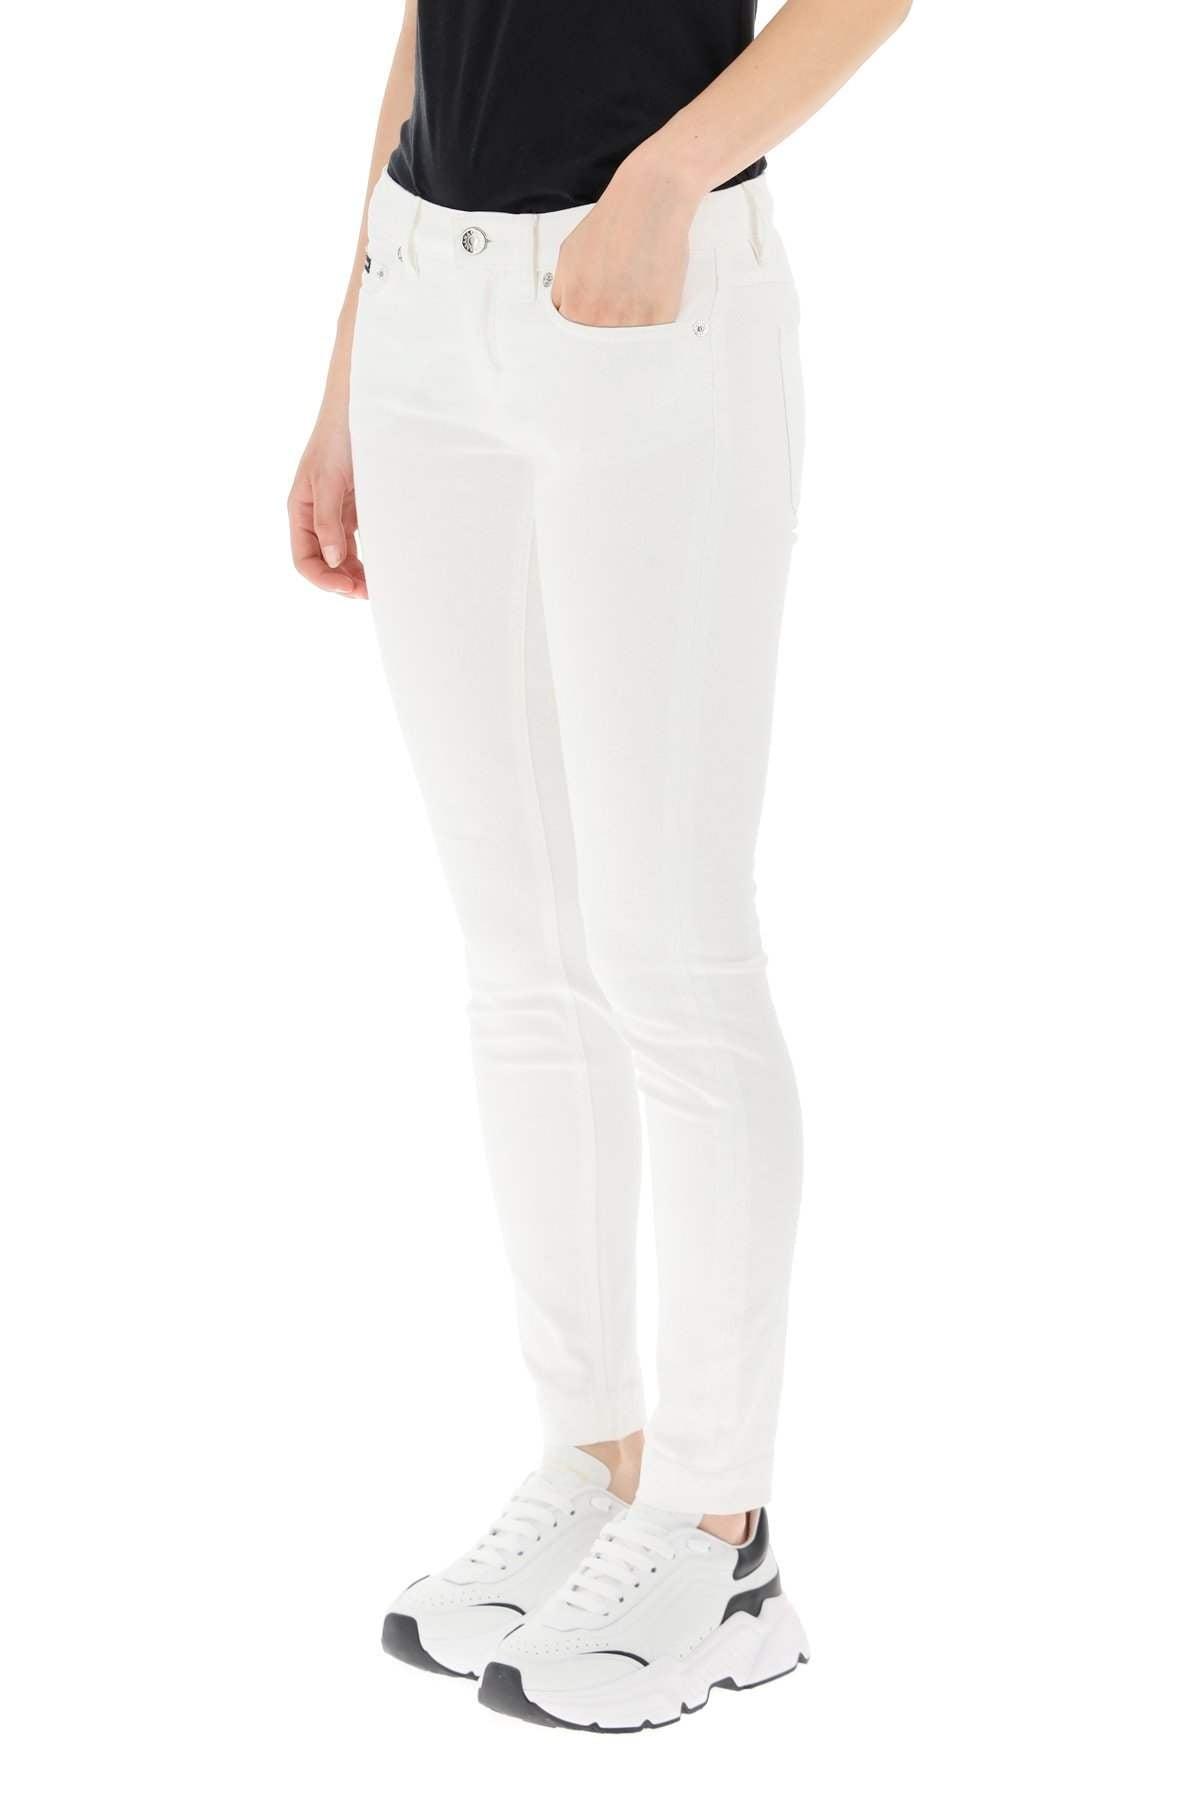 Dolce & Gabbana Pretty Fit Jeans In Stretch Denim in White - Lyst